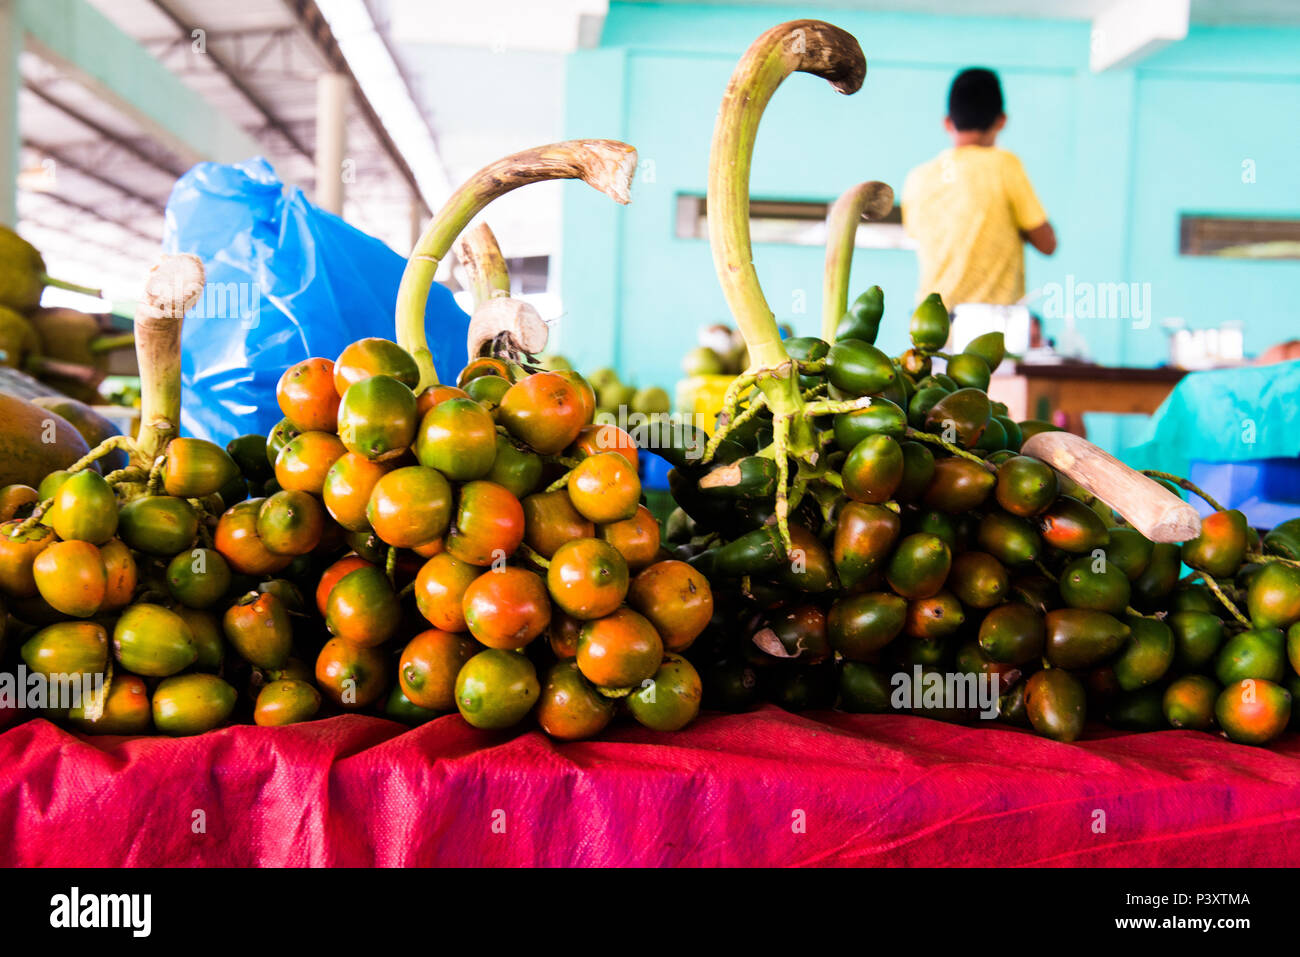 Présente, et présente-vert-amarela, Bactris gasipaes, fruta da régionale regi'o amazônica, durante feira de produtos em Iranduba tam/AM. Banque D'Images